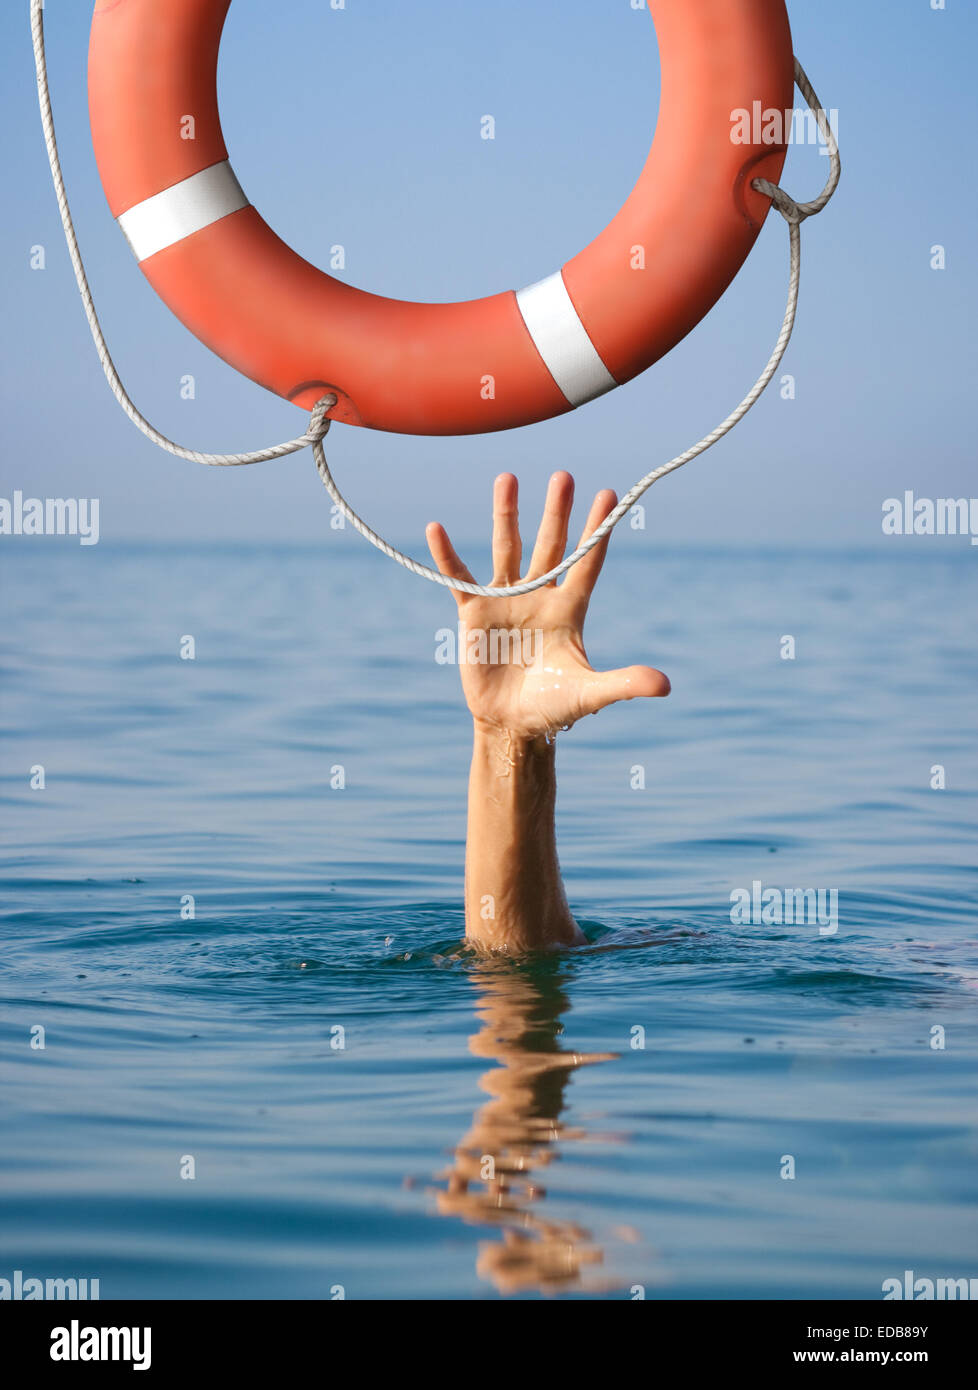 Rettungsring für die Menschen im Meer oder Ozean Wasser ertrinken. Versicherungskonzept. Stockfoto